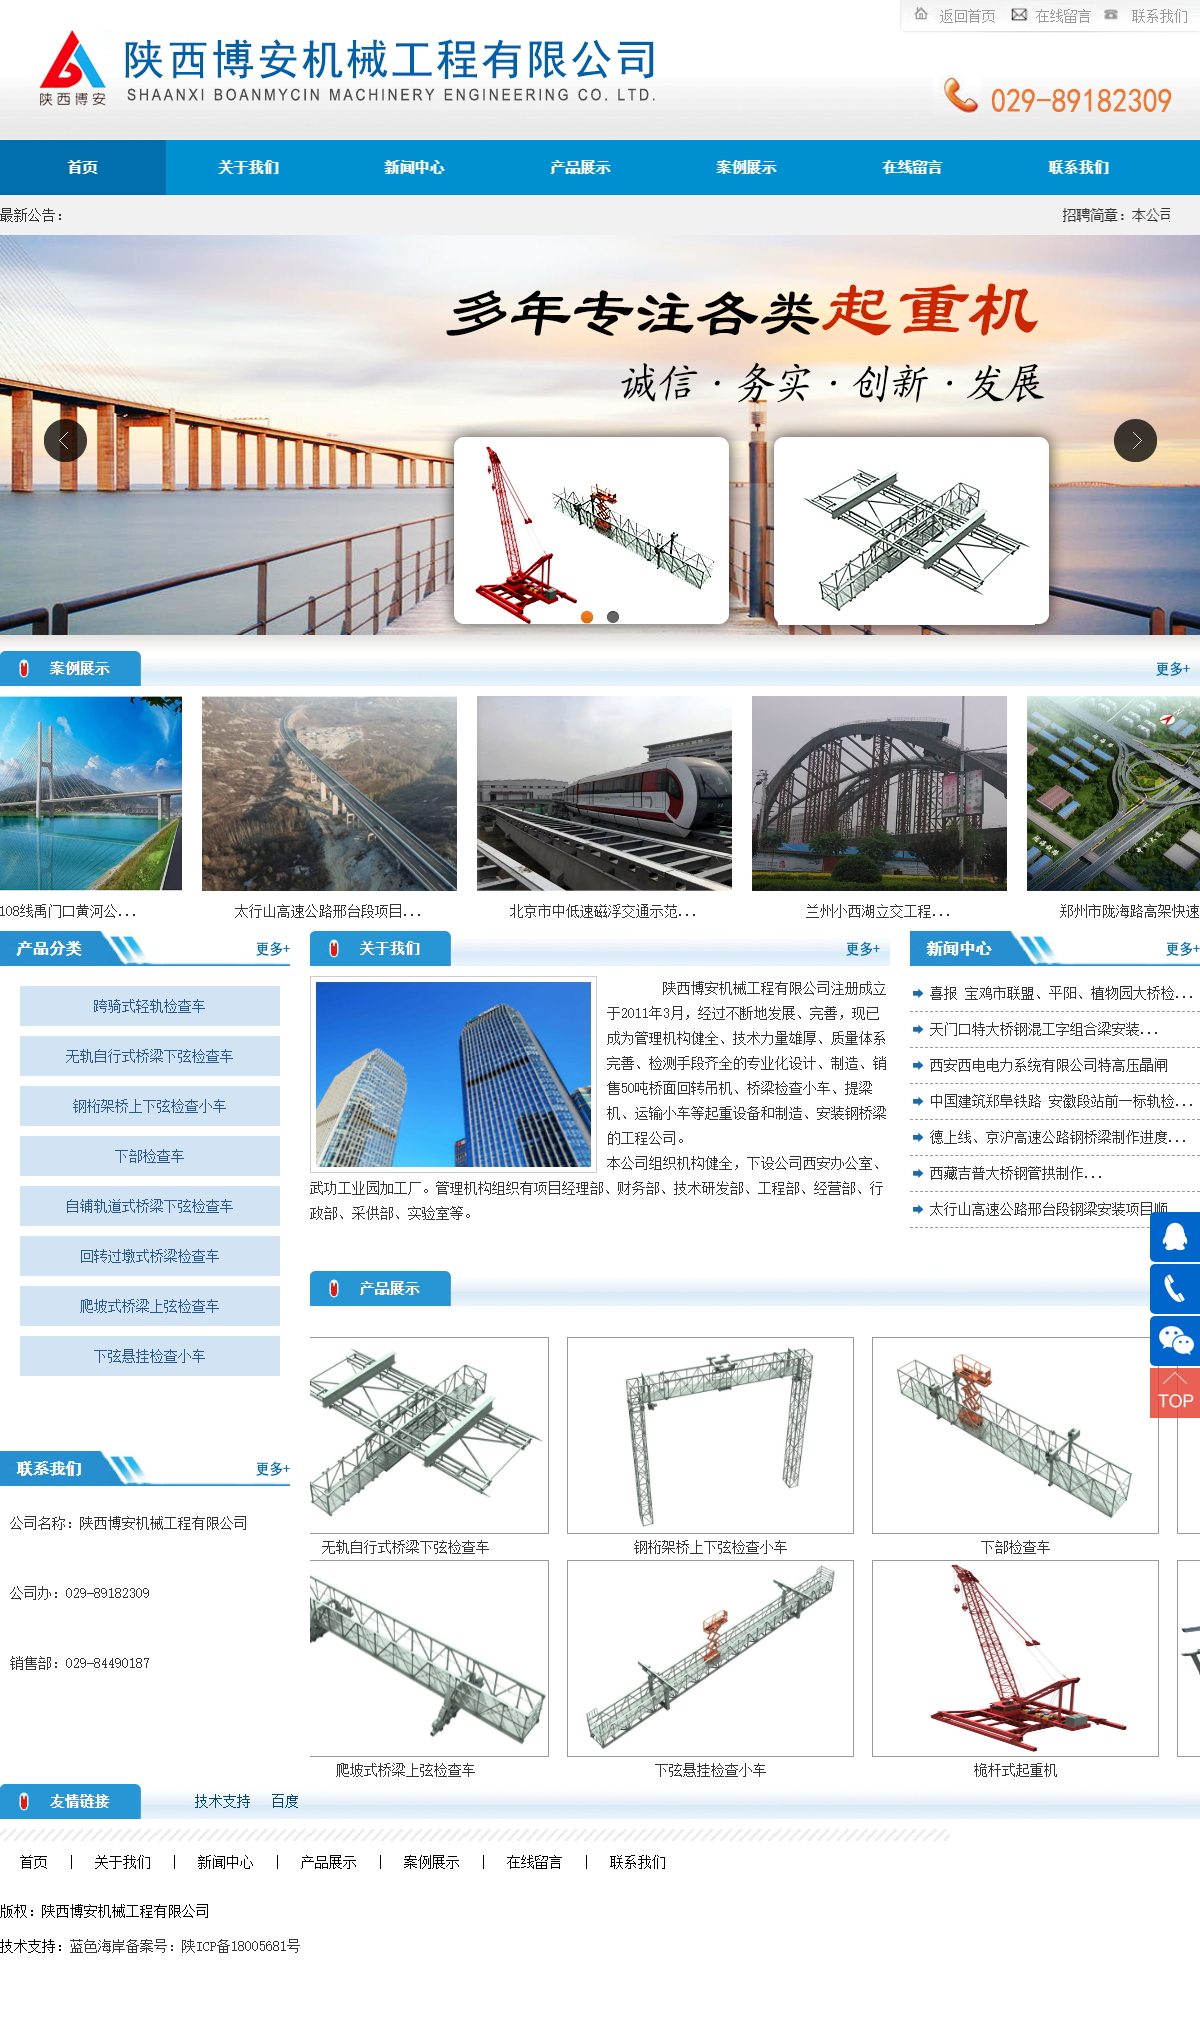 陕西博安机械工程有限公司网站案例